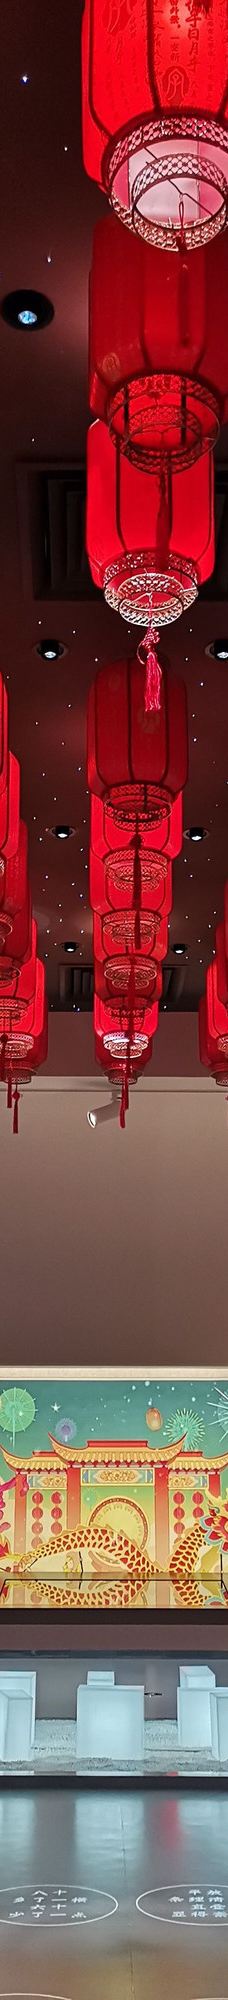 中国文字博物馆-安阳-柚子